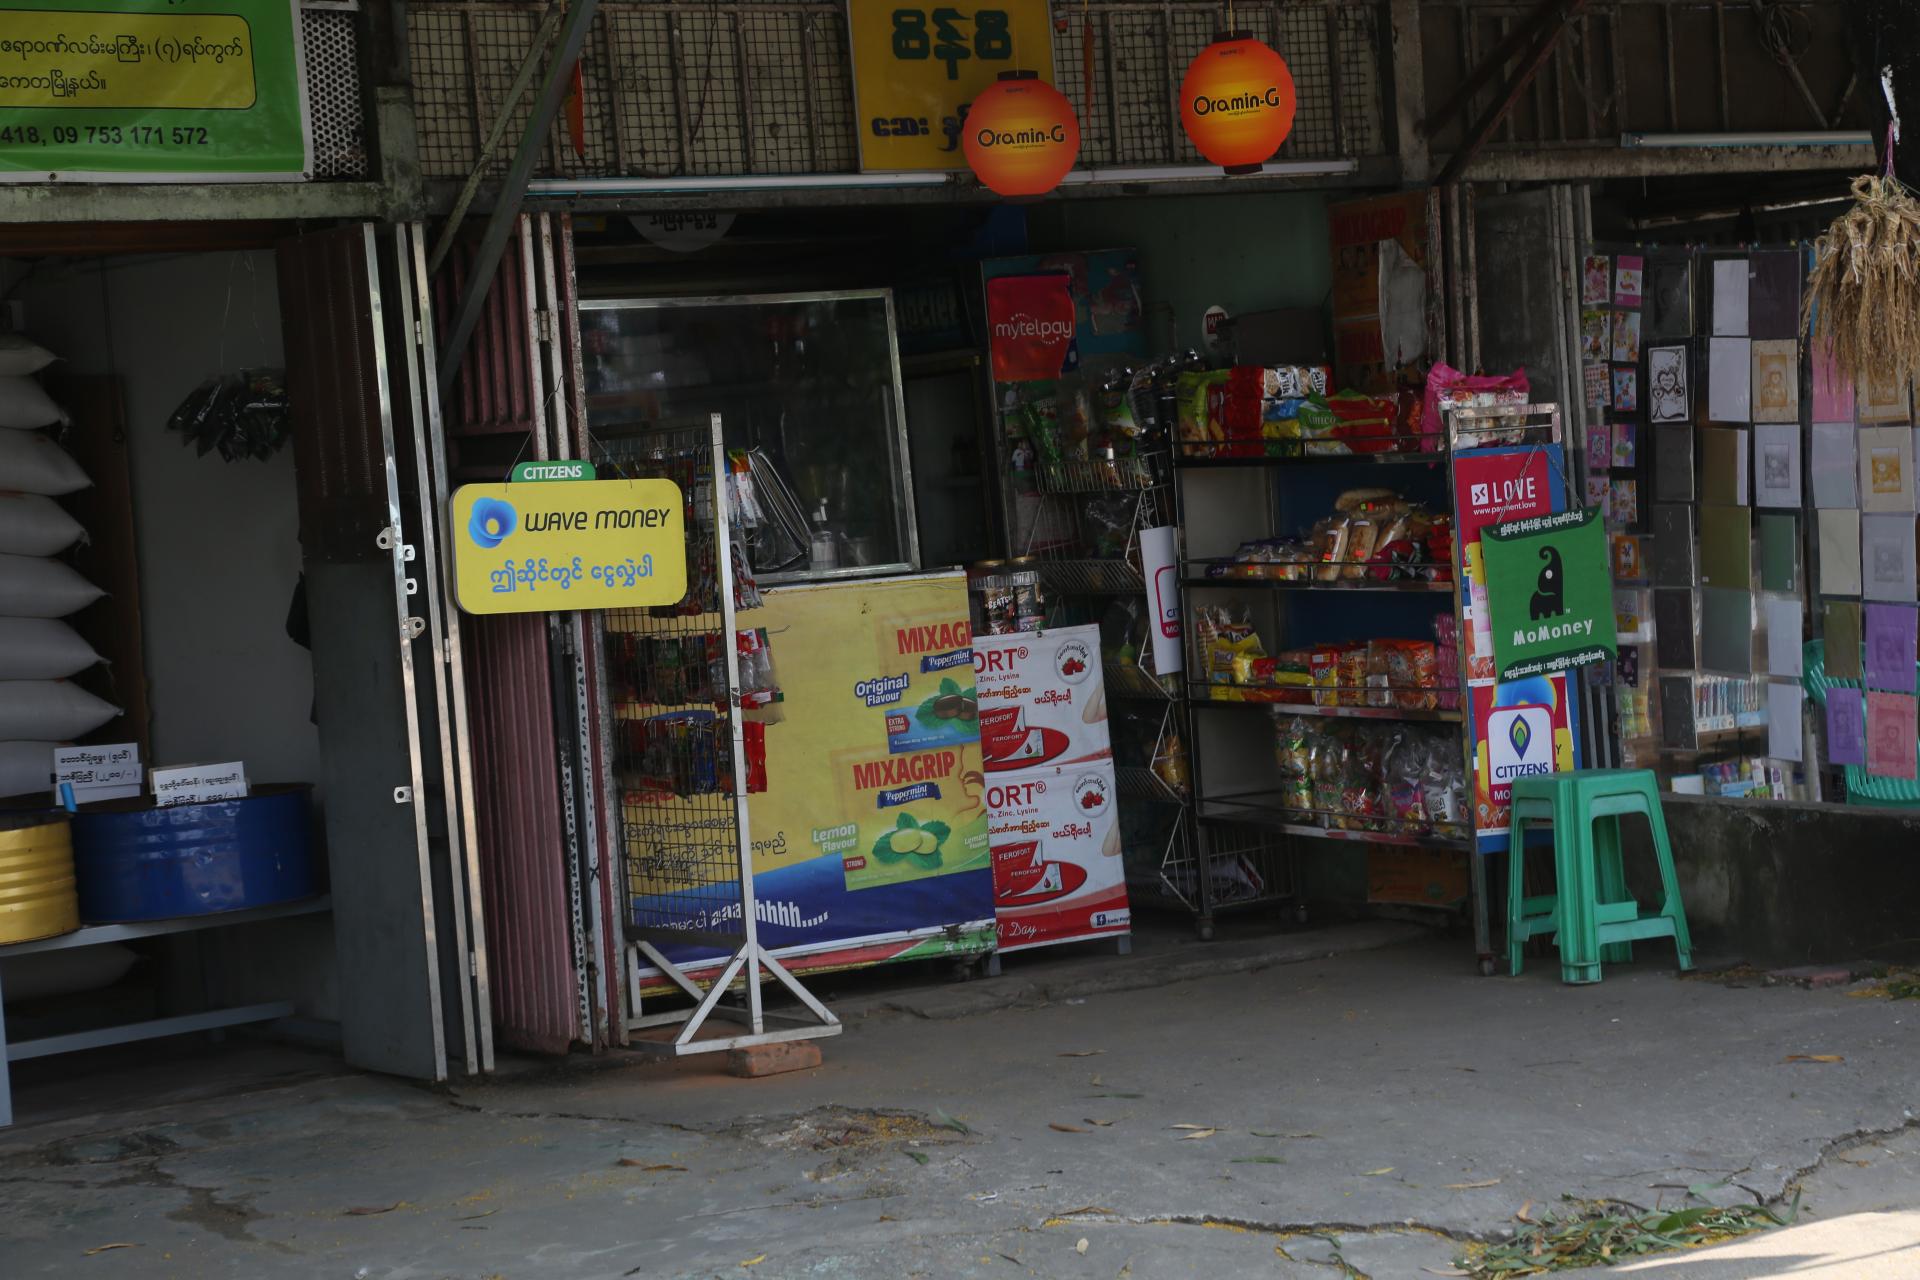 ရန်ကုန်မြို့ မြို့နယ်တစ်ခုအတွင်း မြန်မာကျပ်ငွေကို ရာခိုင်နှုန်းတစ်ခုဖြင့် ငွေလဲ၊ ငွေလွှဲ ဝန်ဆောင်မှုပေးနေသော ဆိုင်တစ်ဆိုင်ကို တွေ့ရစဉ် (ဓာတ်ပုံ-သီဟအောင်)